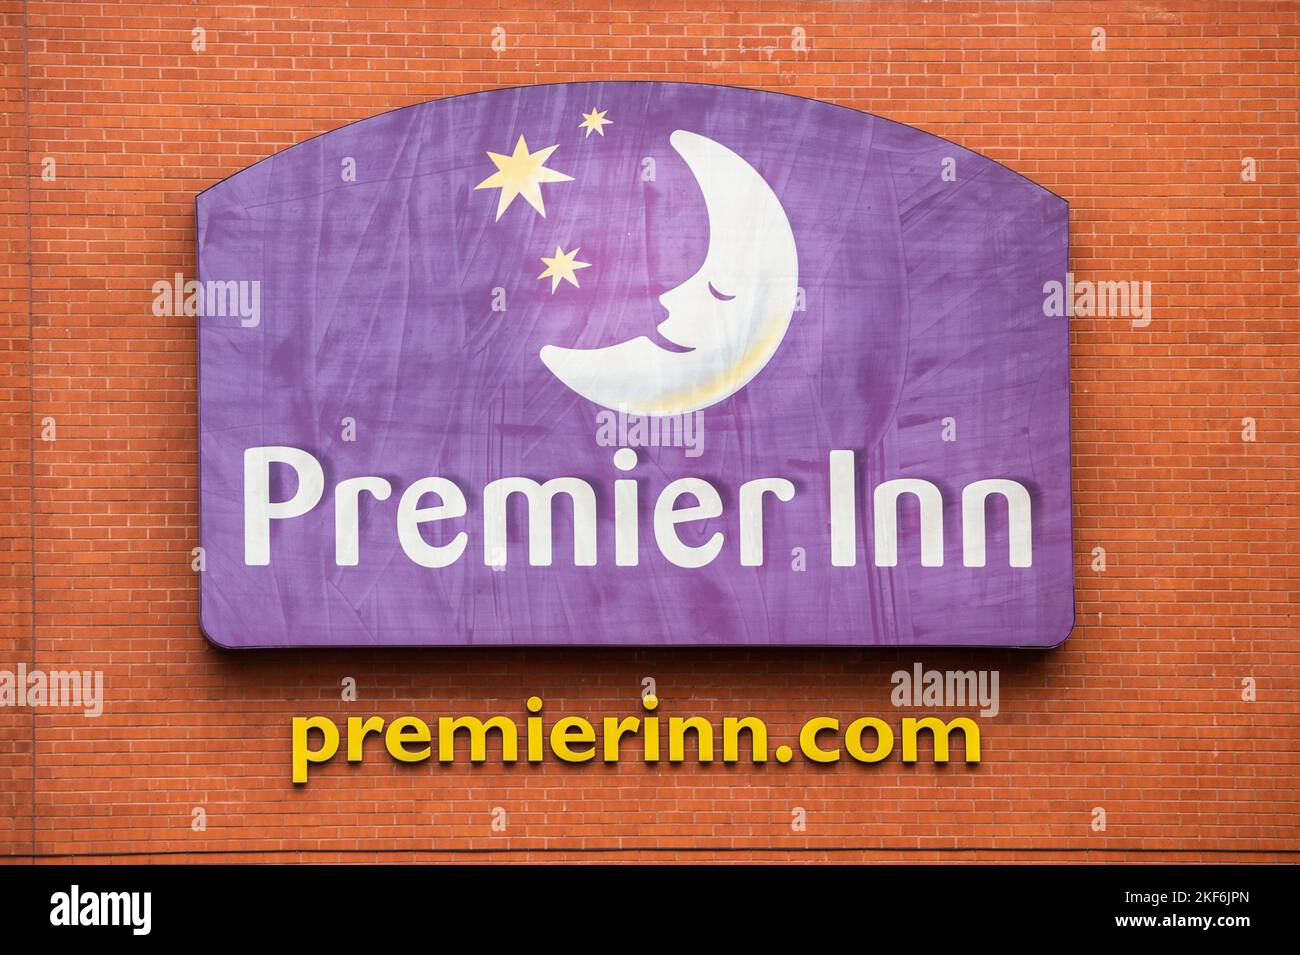 Premier Inn logo/sign on a Premier Inn hotel in Coventry, West Midlands, UK. Stock Photo